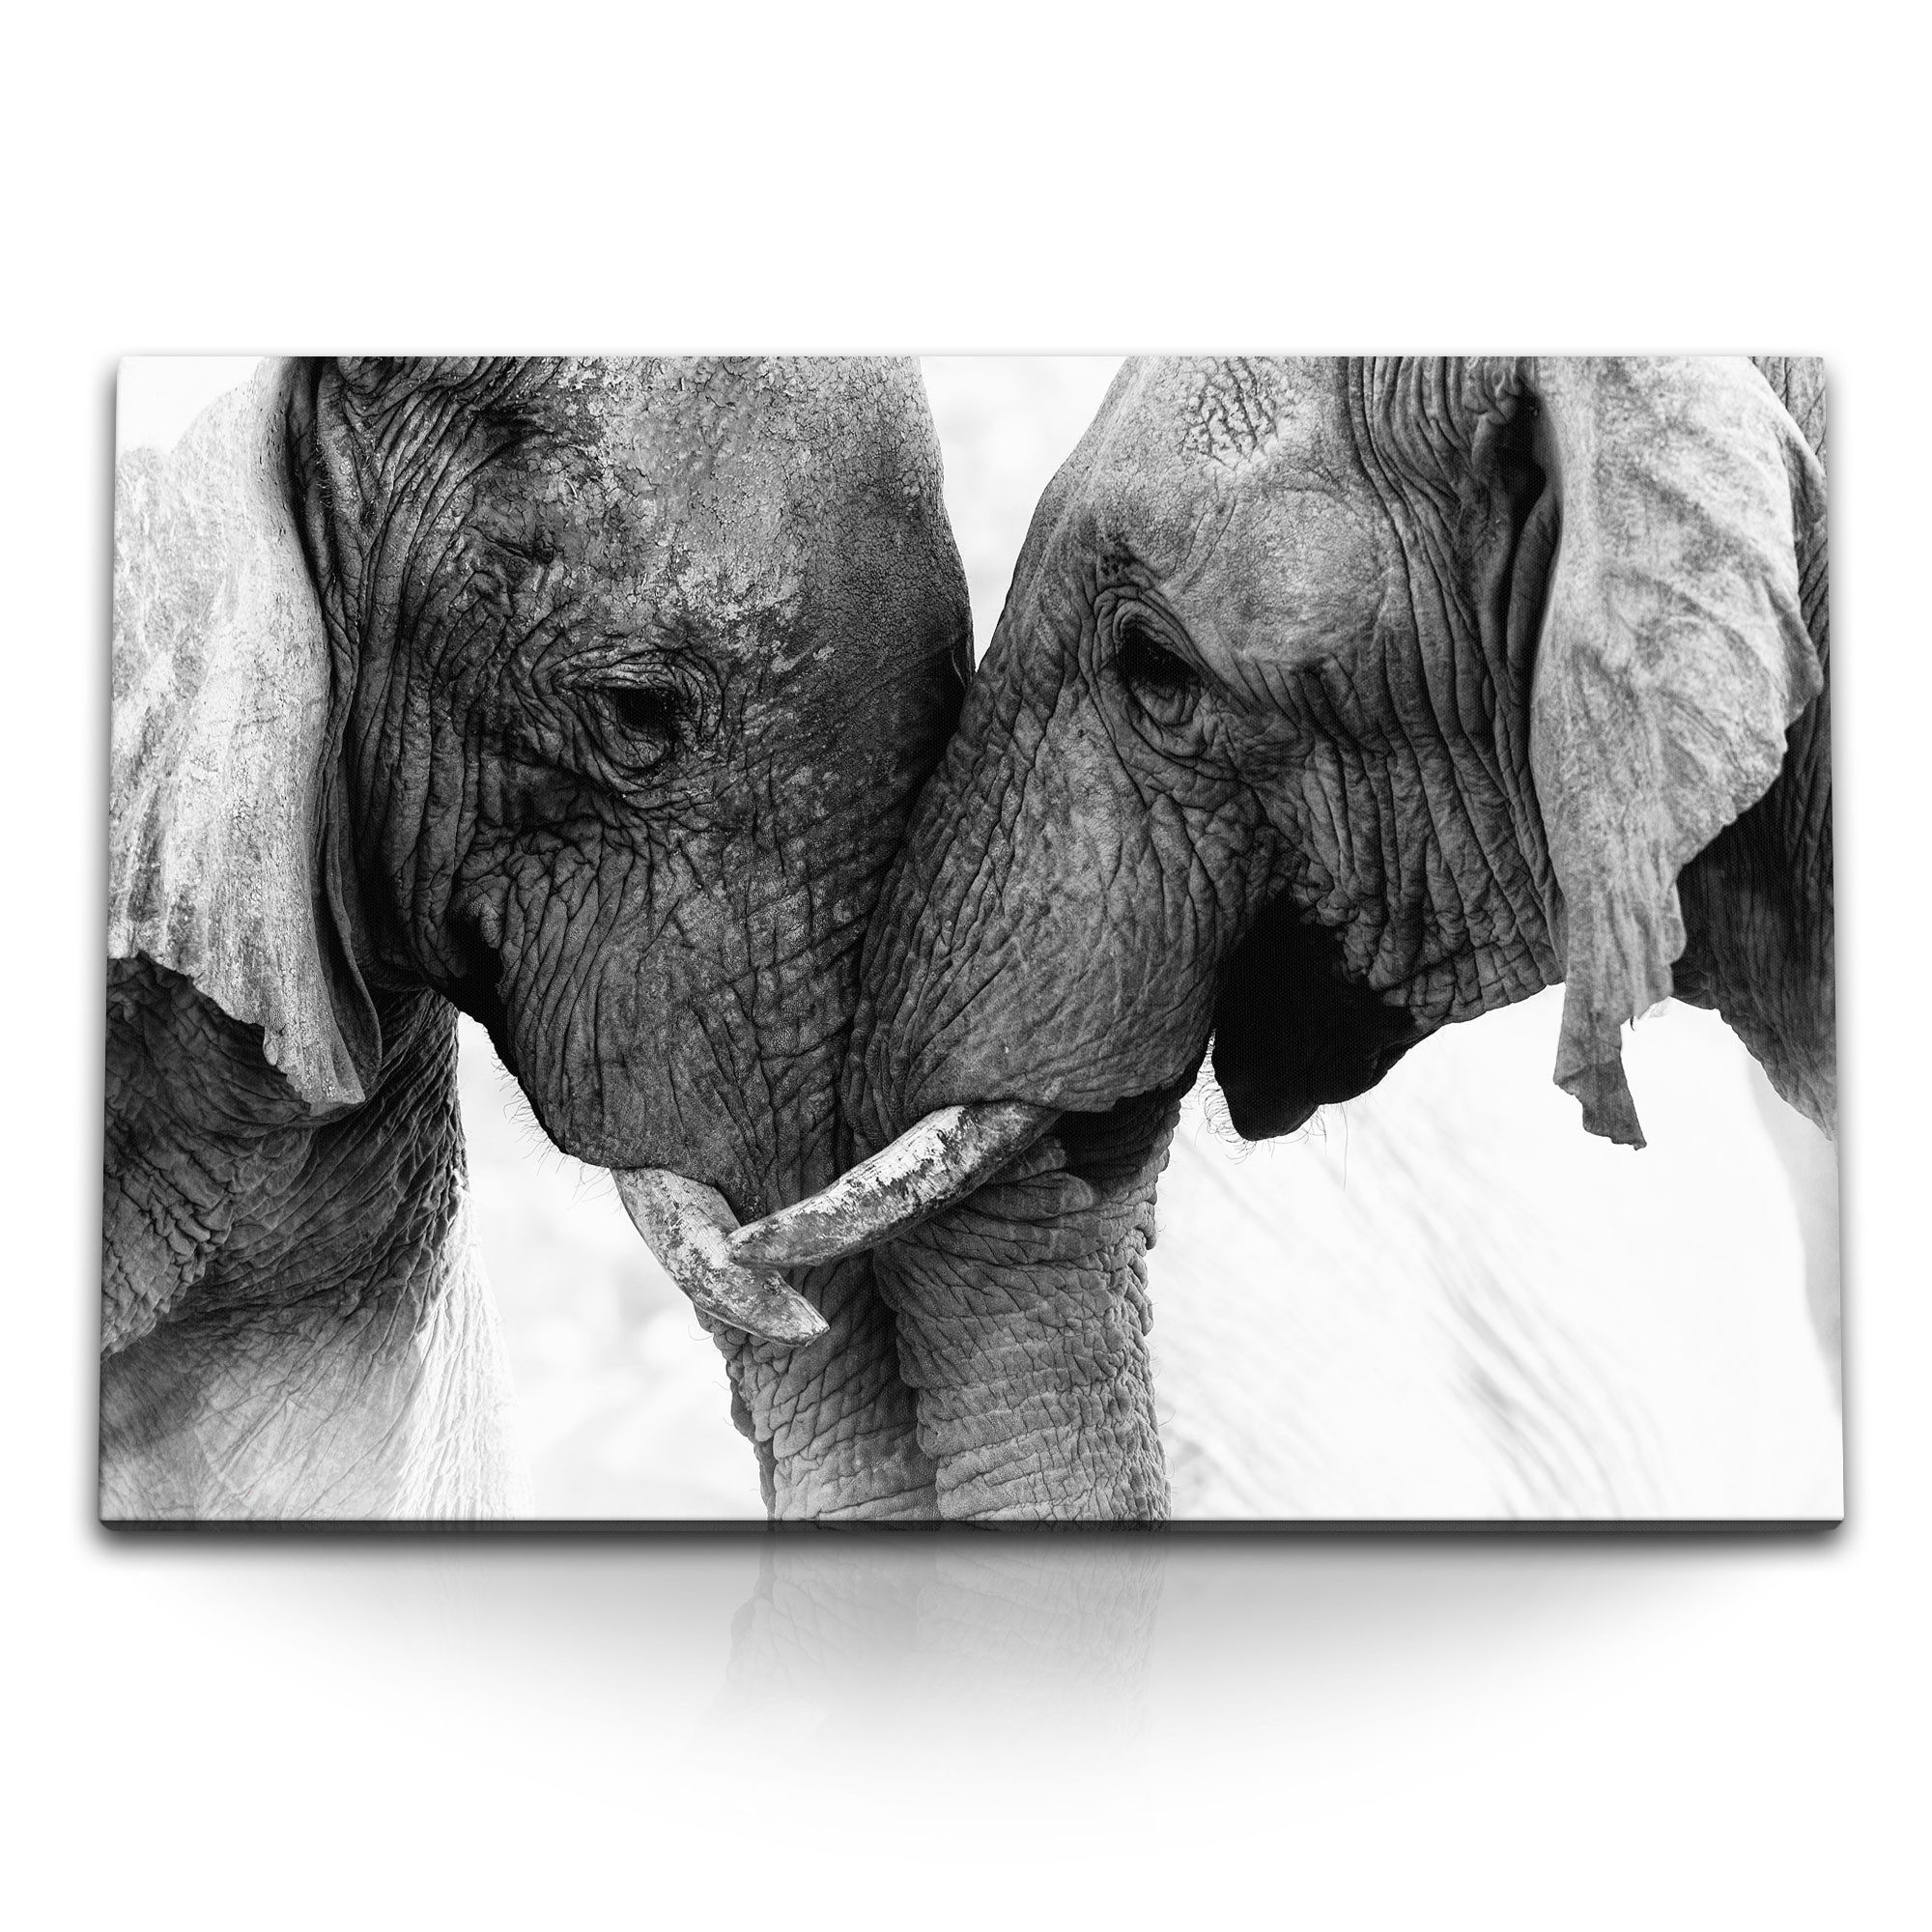 Sinus Art Leinwandbild 120x80cm Wandbild auf Leinwand Schwarz Weiß Tierfotografie Elefanten S, (1 St)